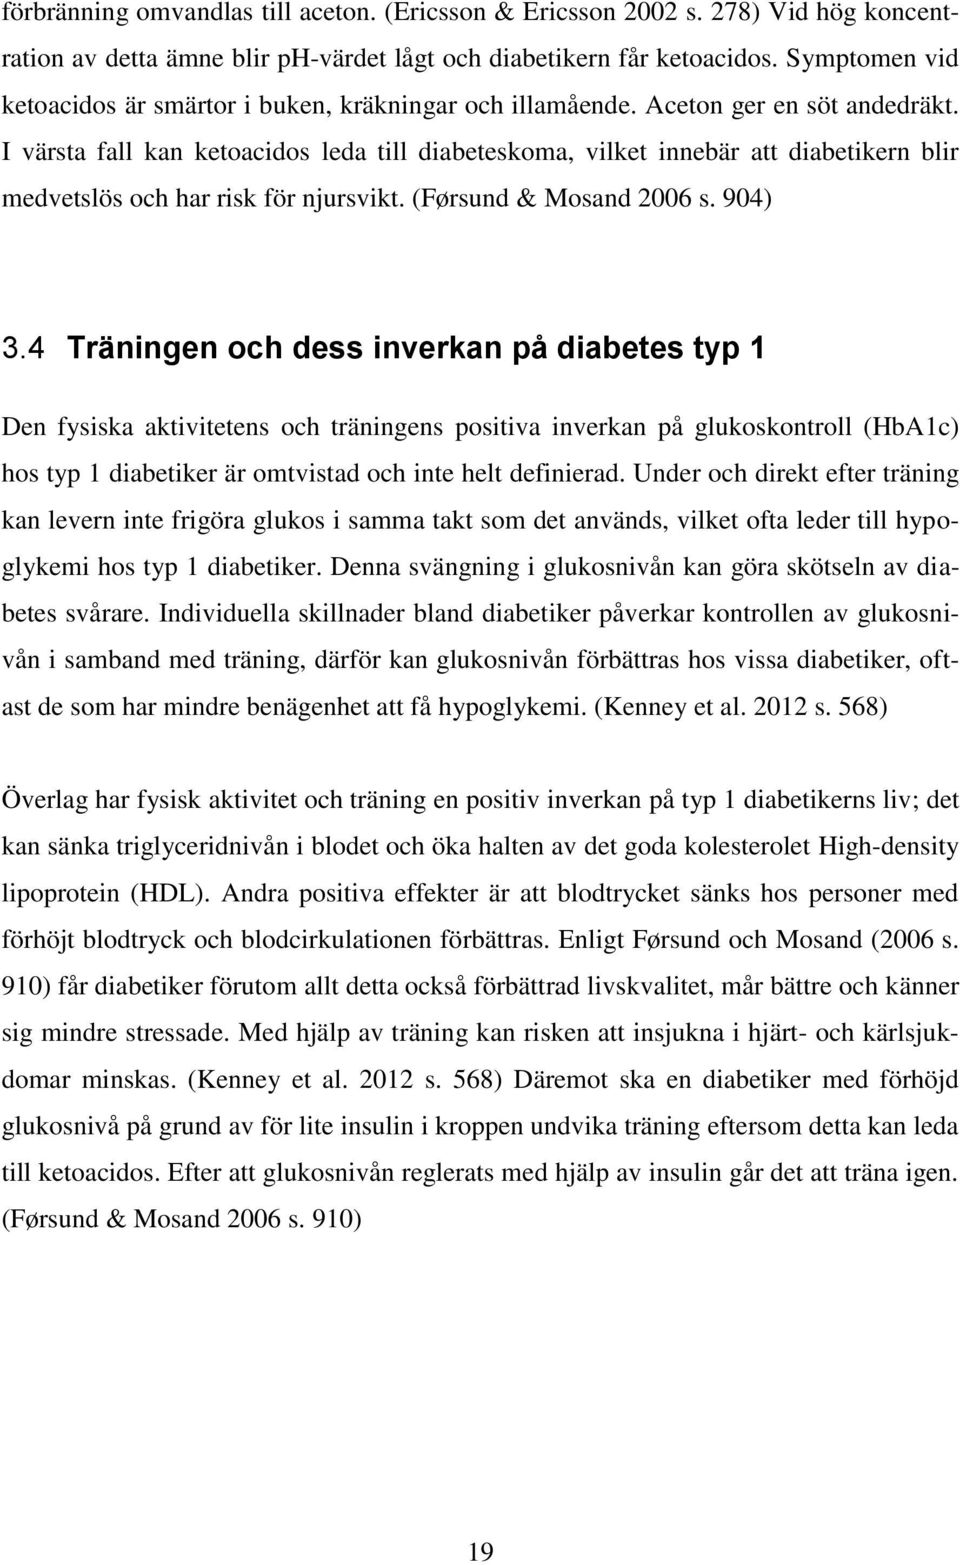 I värsta fall kan ketoacidos leda till diabeteskoma, vilket innebär att diabetikern blir medvetslös och har risk för njursvikt. (Førsund & Mosand 2006 s. 904) 3.